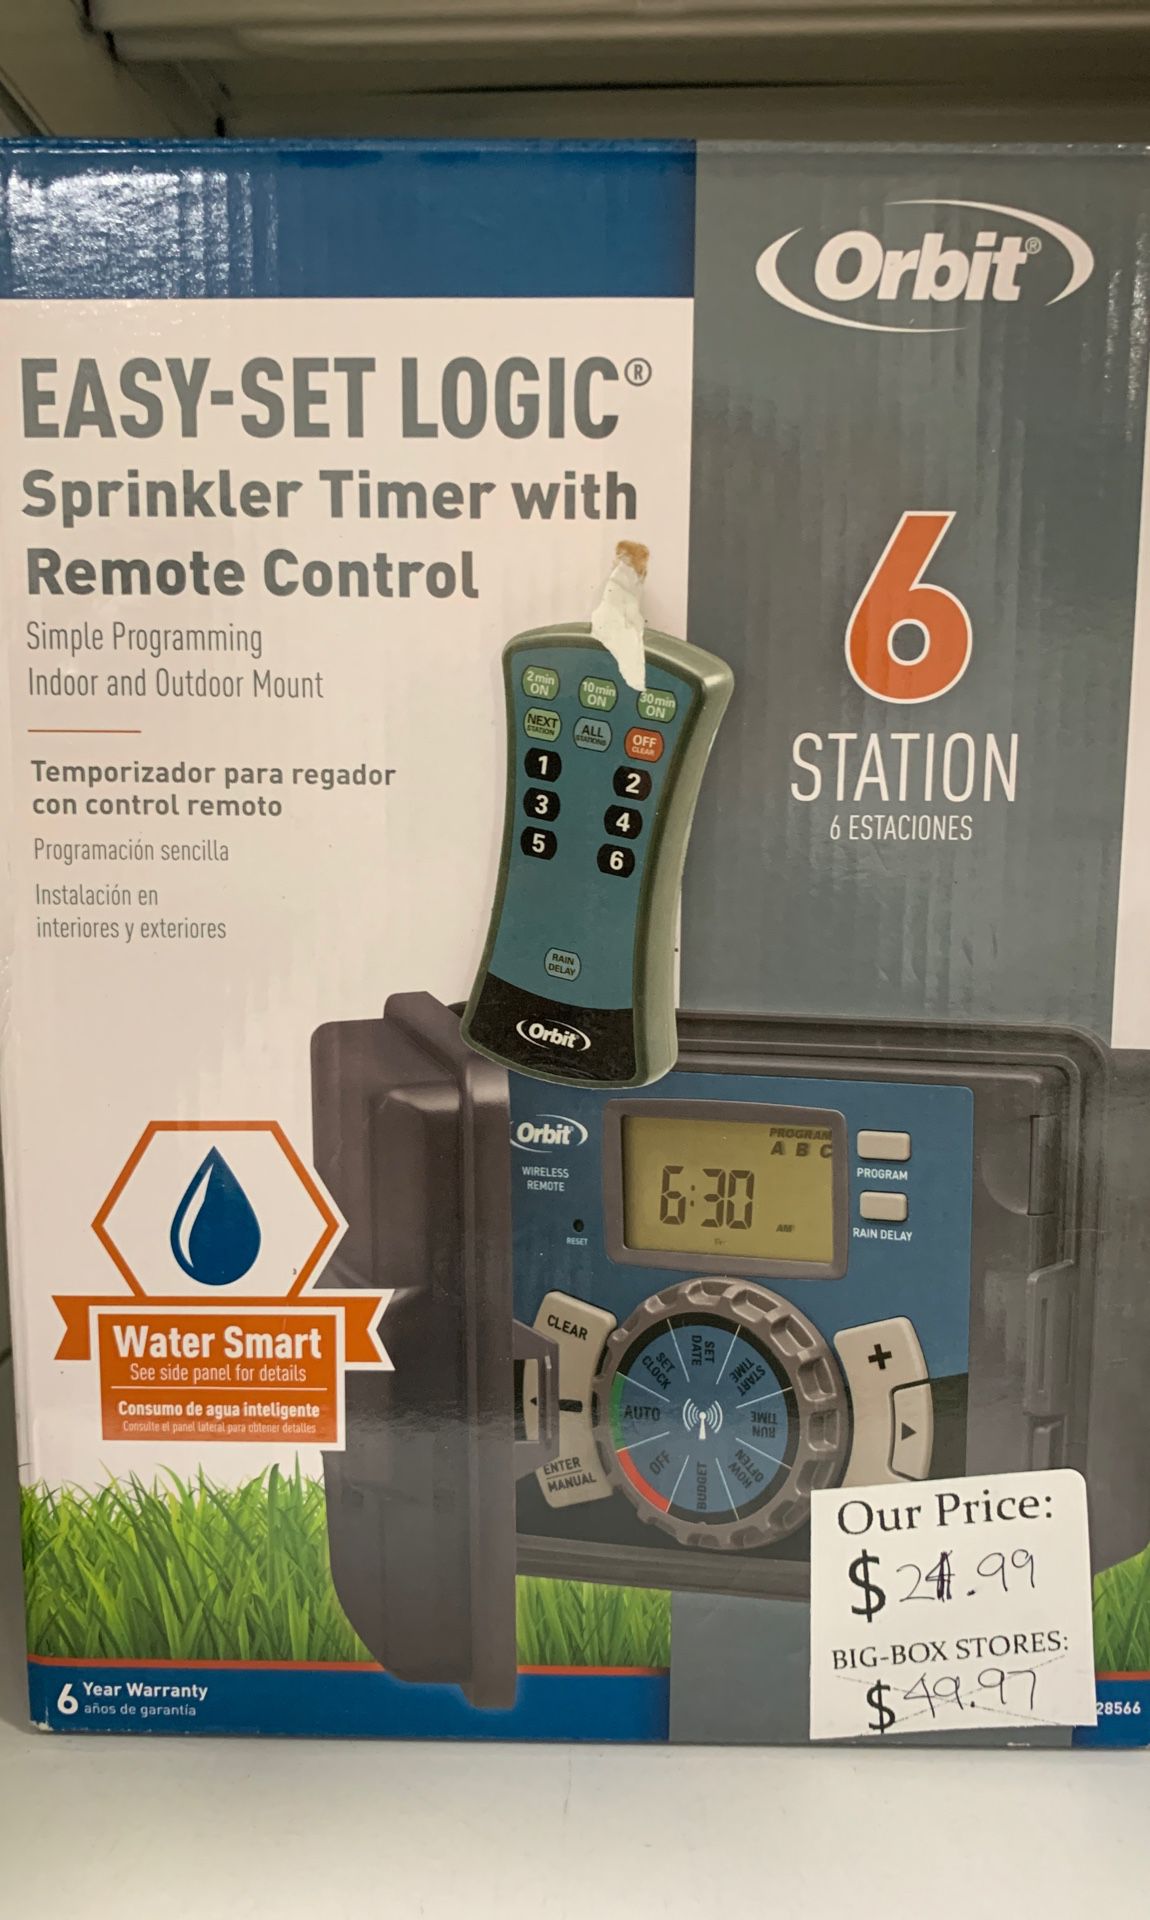 Sprinkler timer with remote control